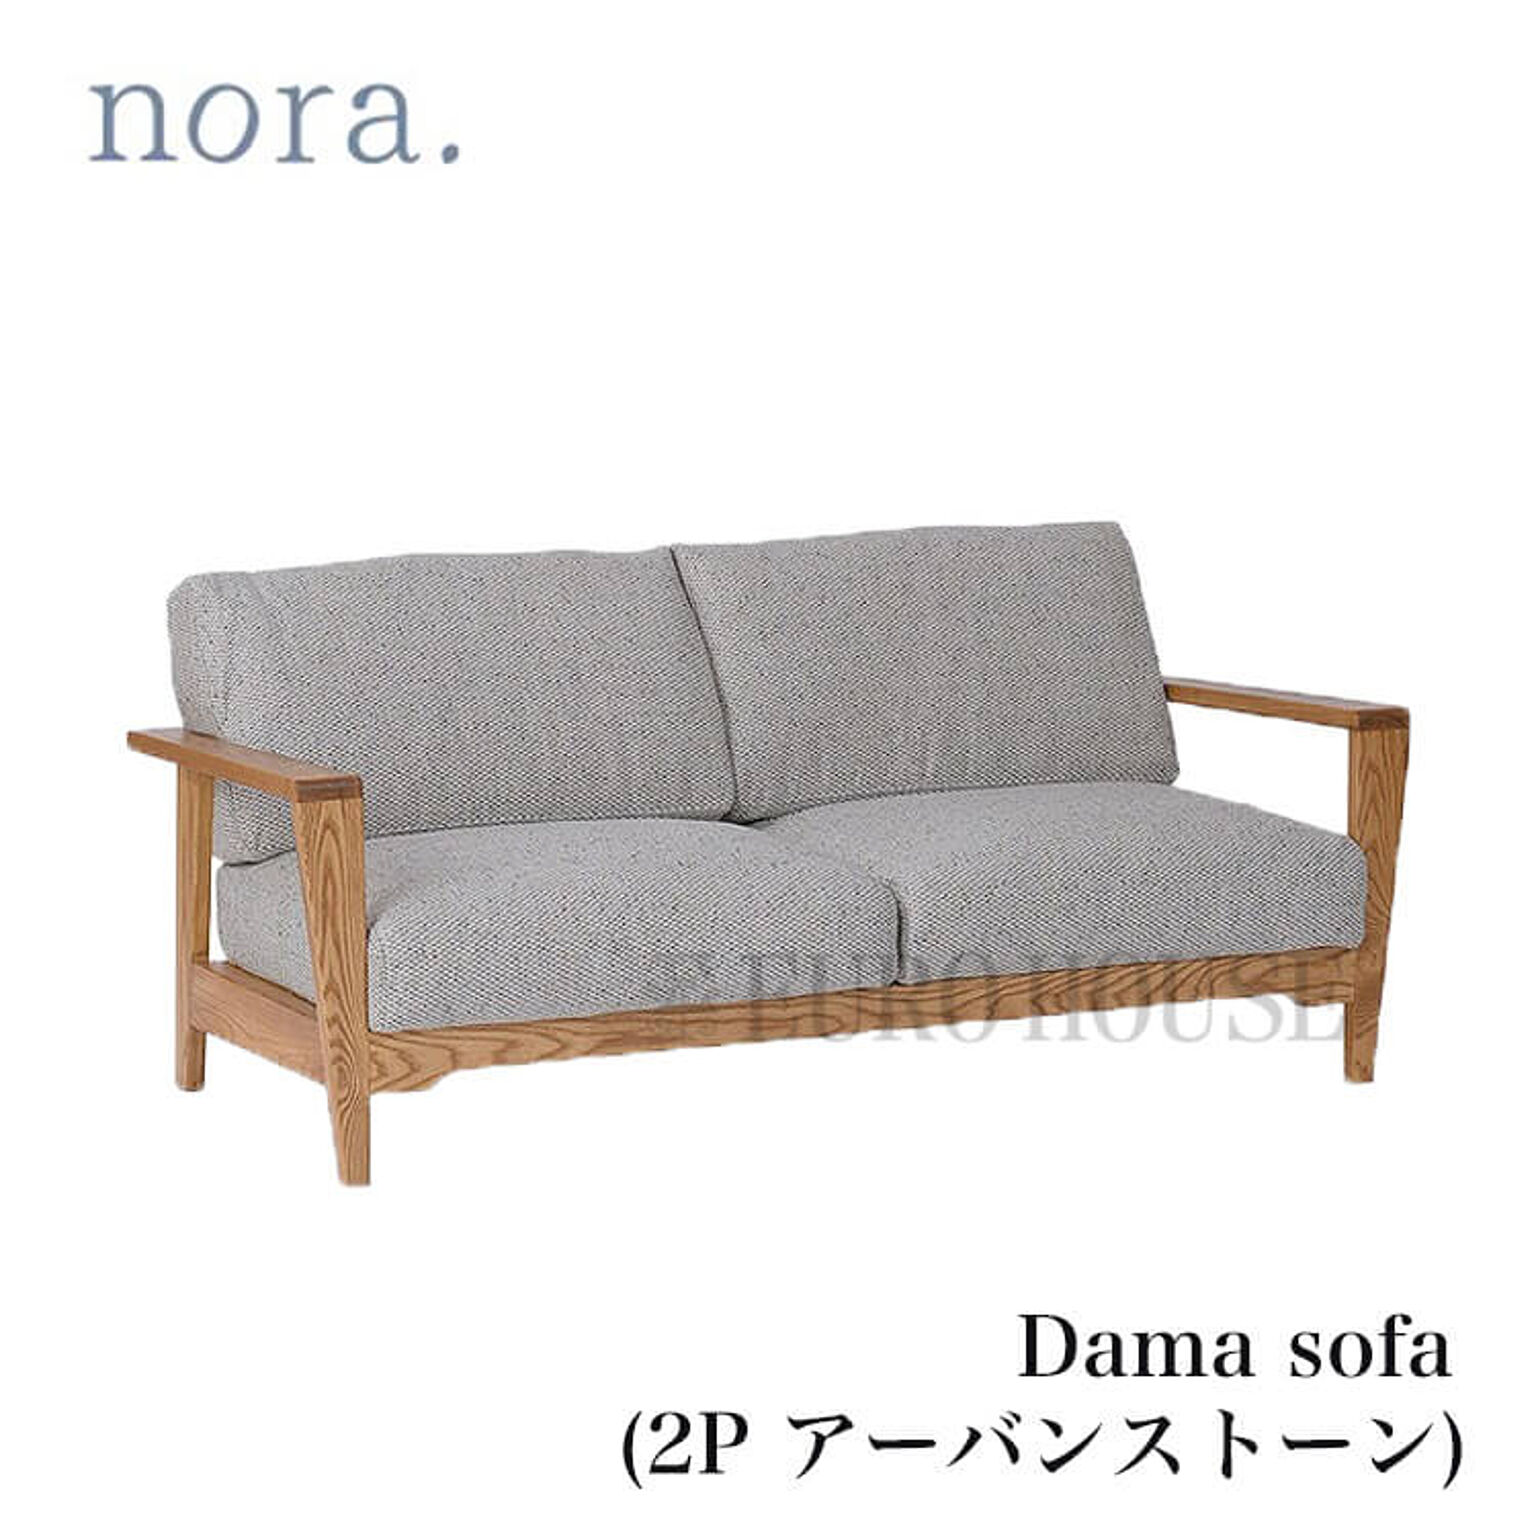 在庫僅か4月頃 ソファ 2Pソファ フロアソファ Dama sofa ダーマ アーバンストーン アッシュ材 木製 ナチュラル グレー GY 北欧 nora ノラ nora. 関家具 